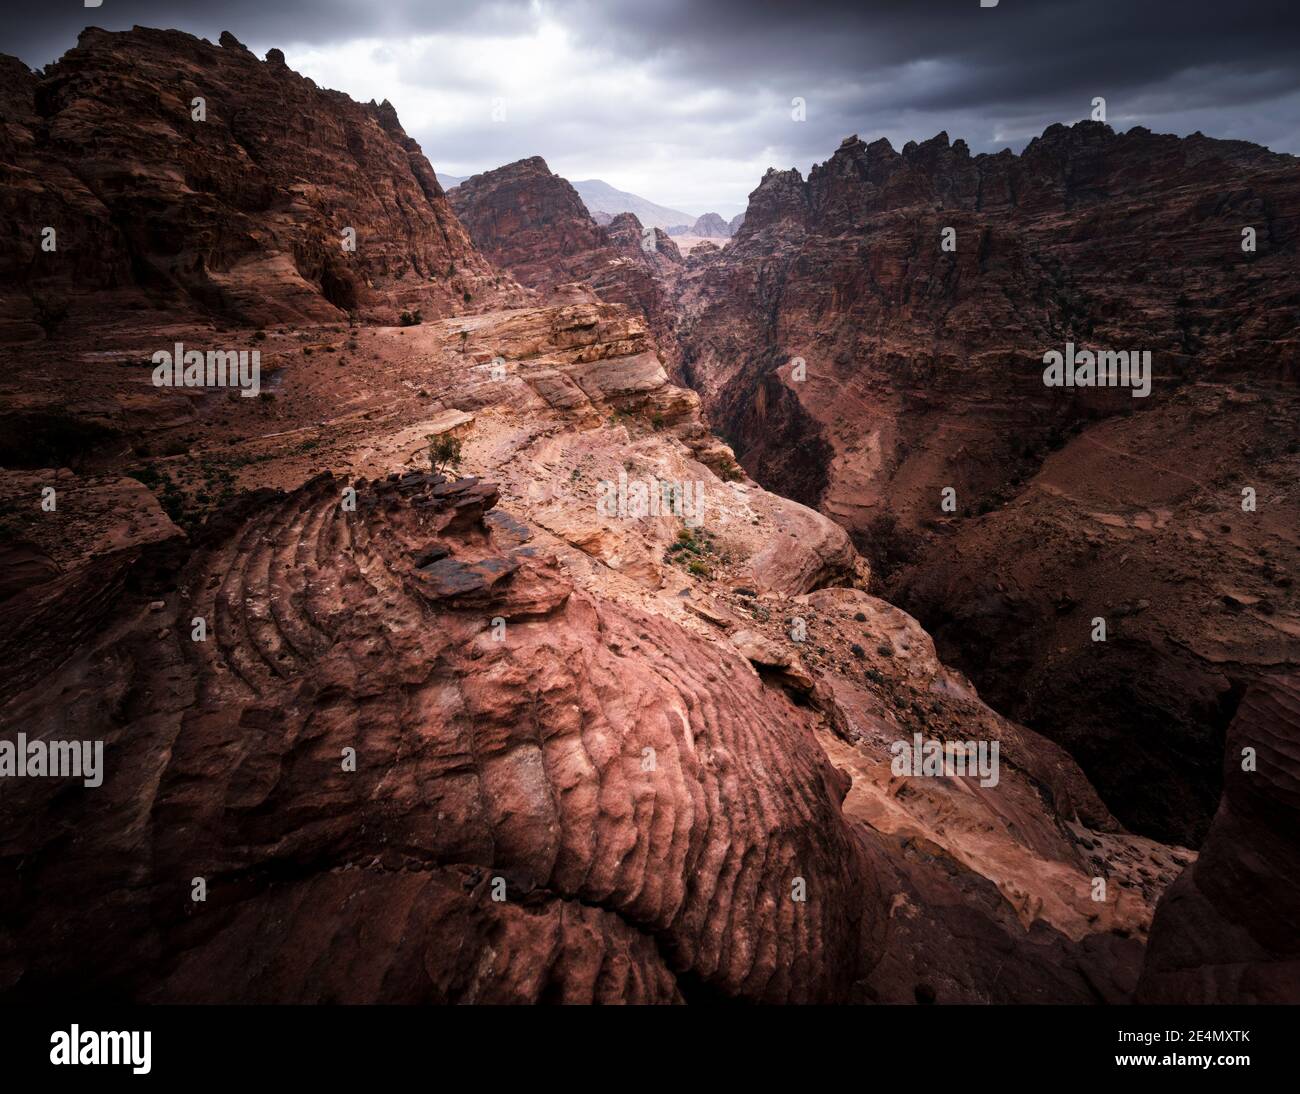 Scenari paesaggistici epici della Rift Valley a Wadi Musa / Petra, con rari cieli nuvolosi drammatici nel deserto. Foto Stock